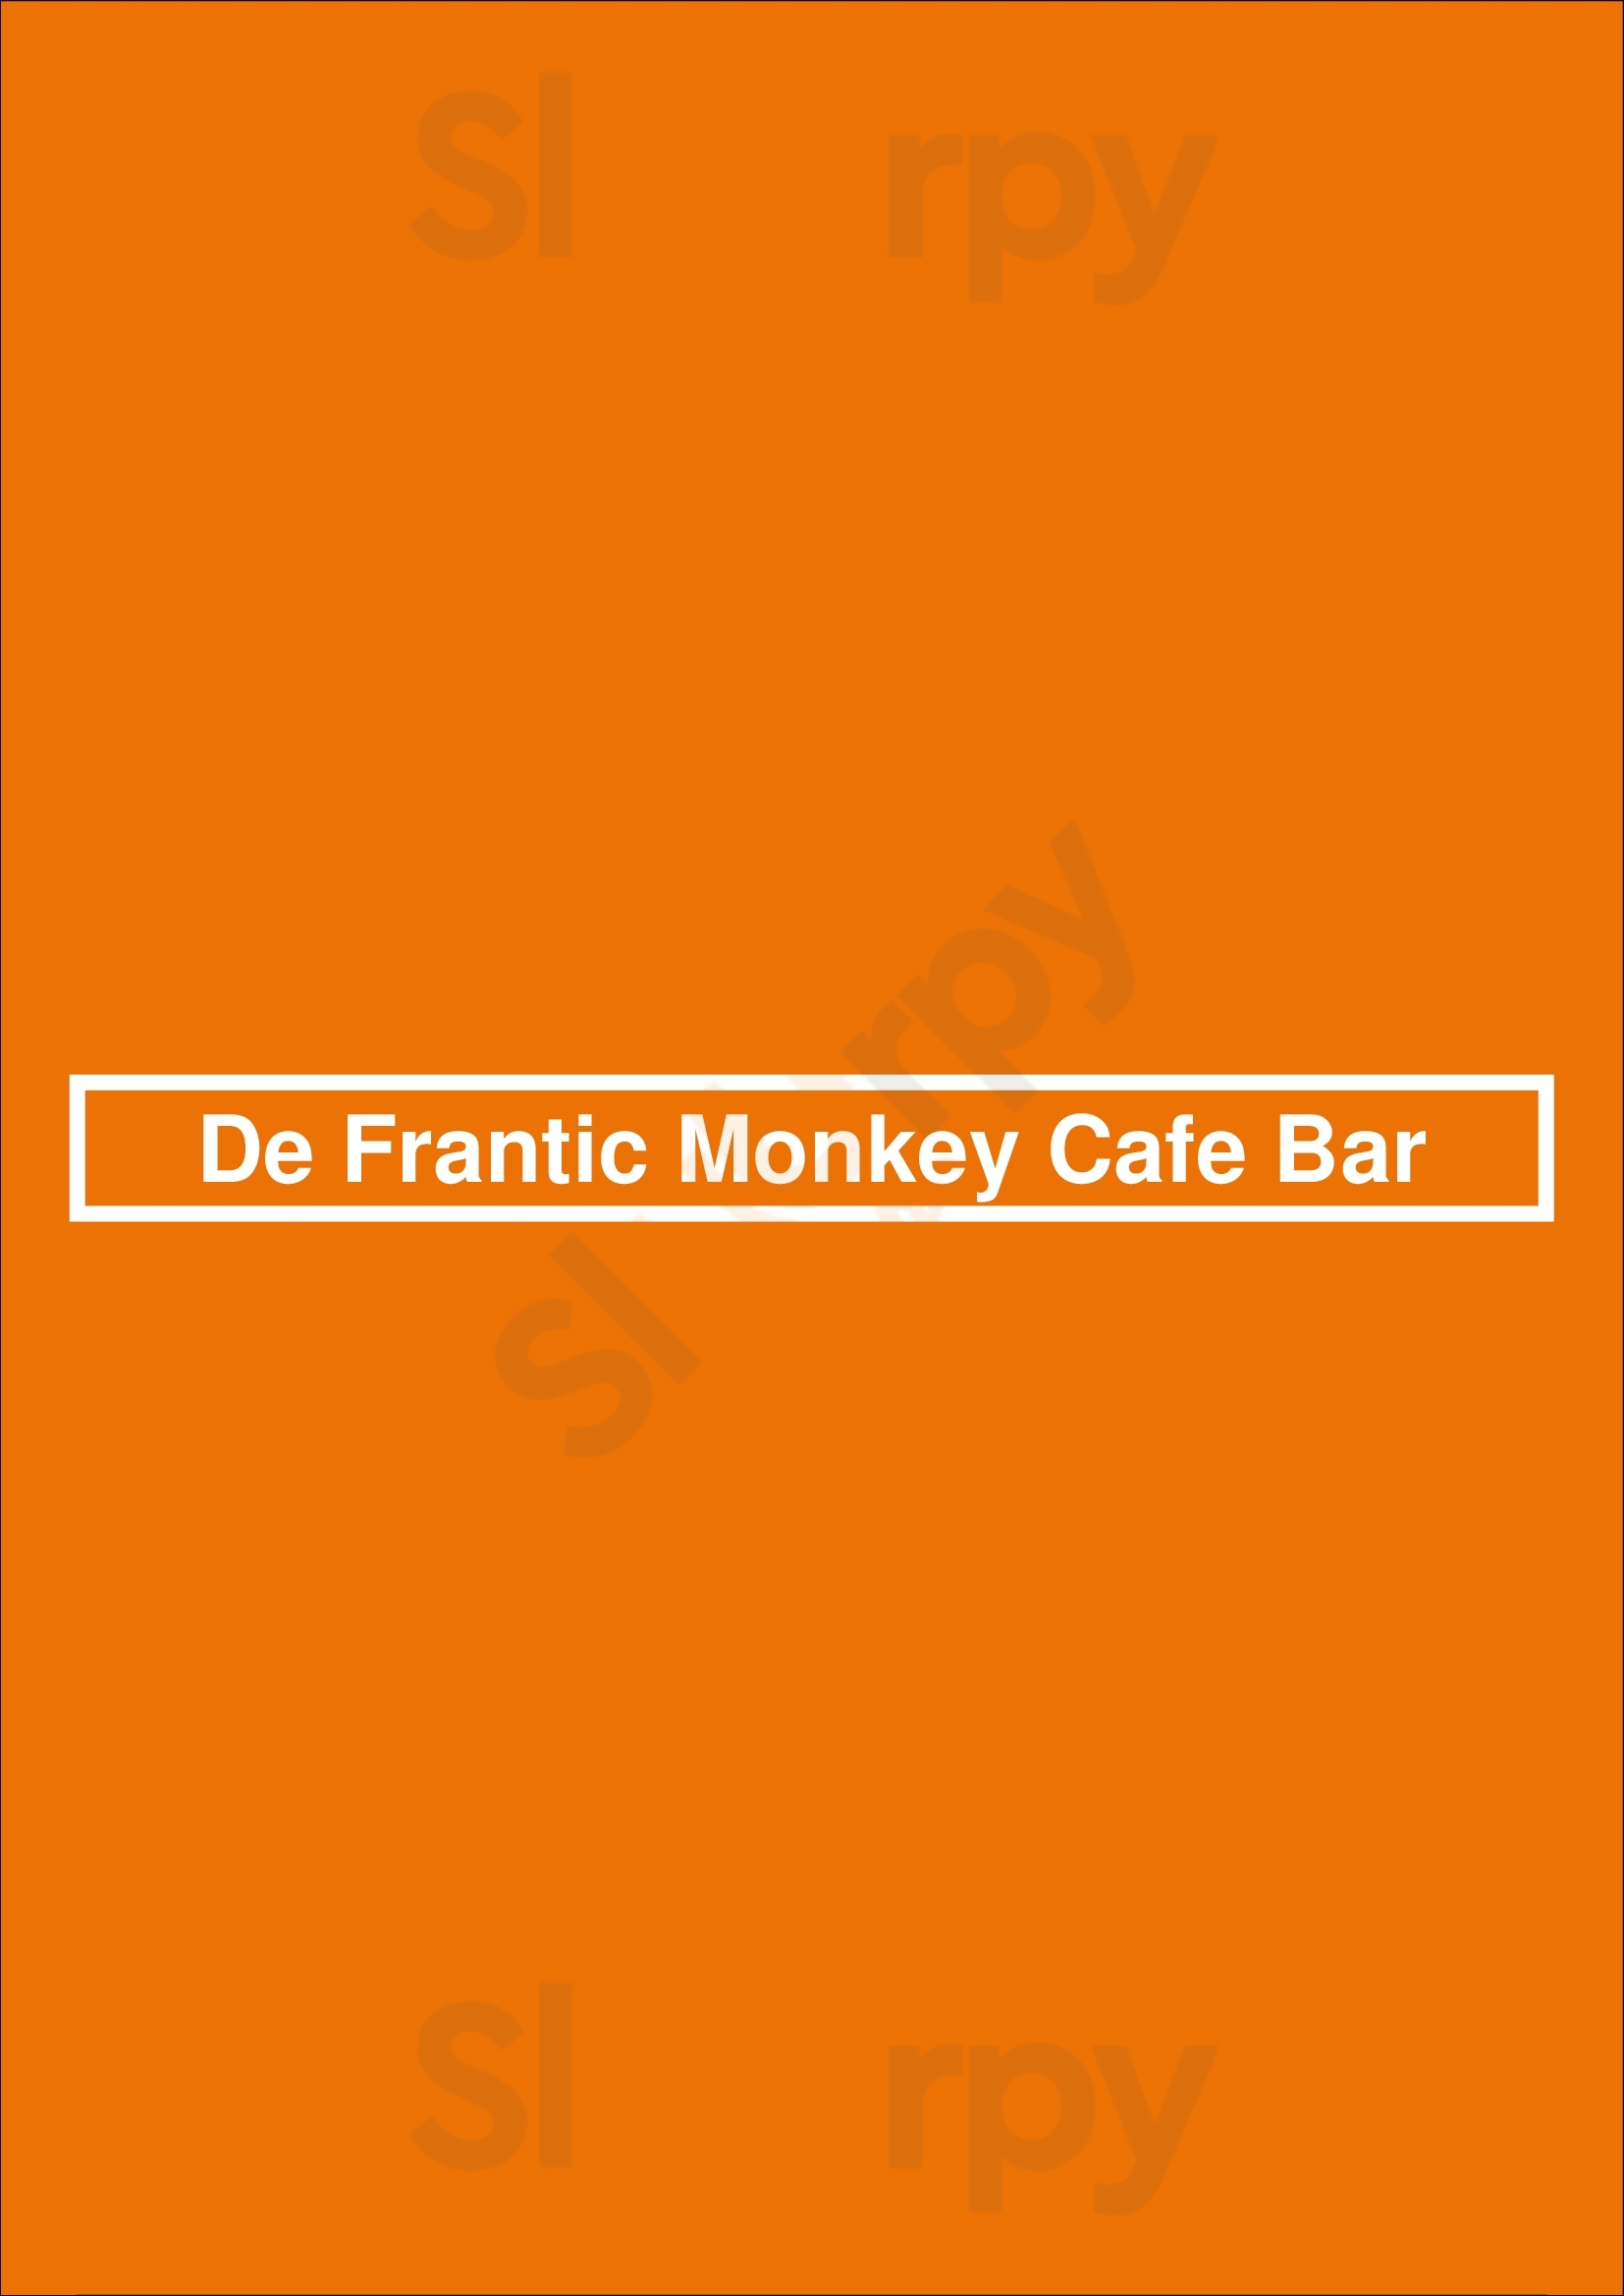 De Frantic Monkey Cafe Bar Toronto Menu - 1